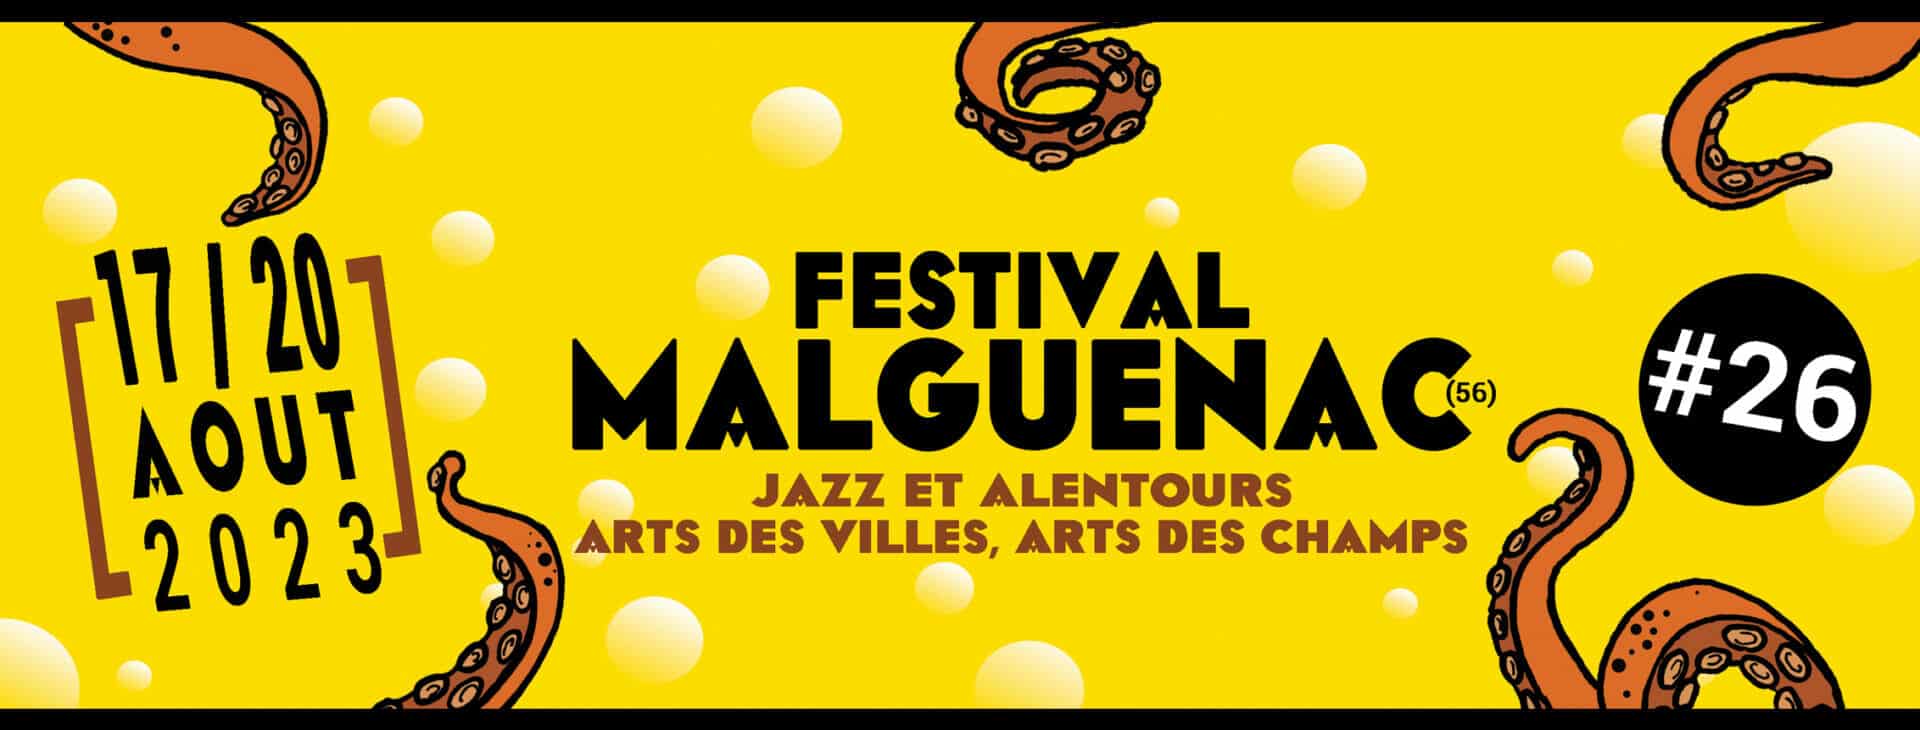 Festival de Malguénac, Arts des villes, arts des champs du 17 au 20 août 2023